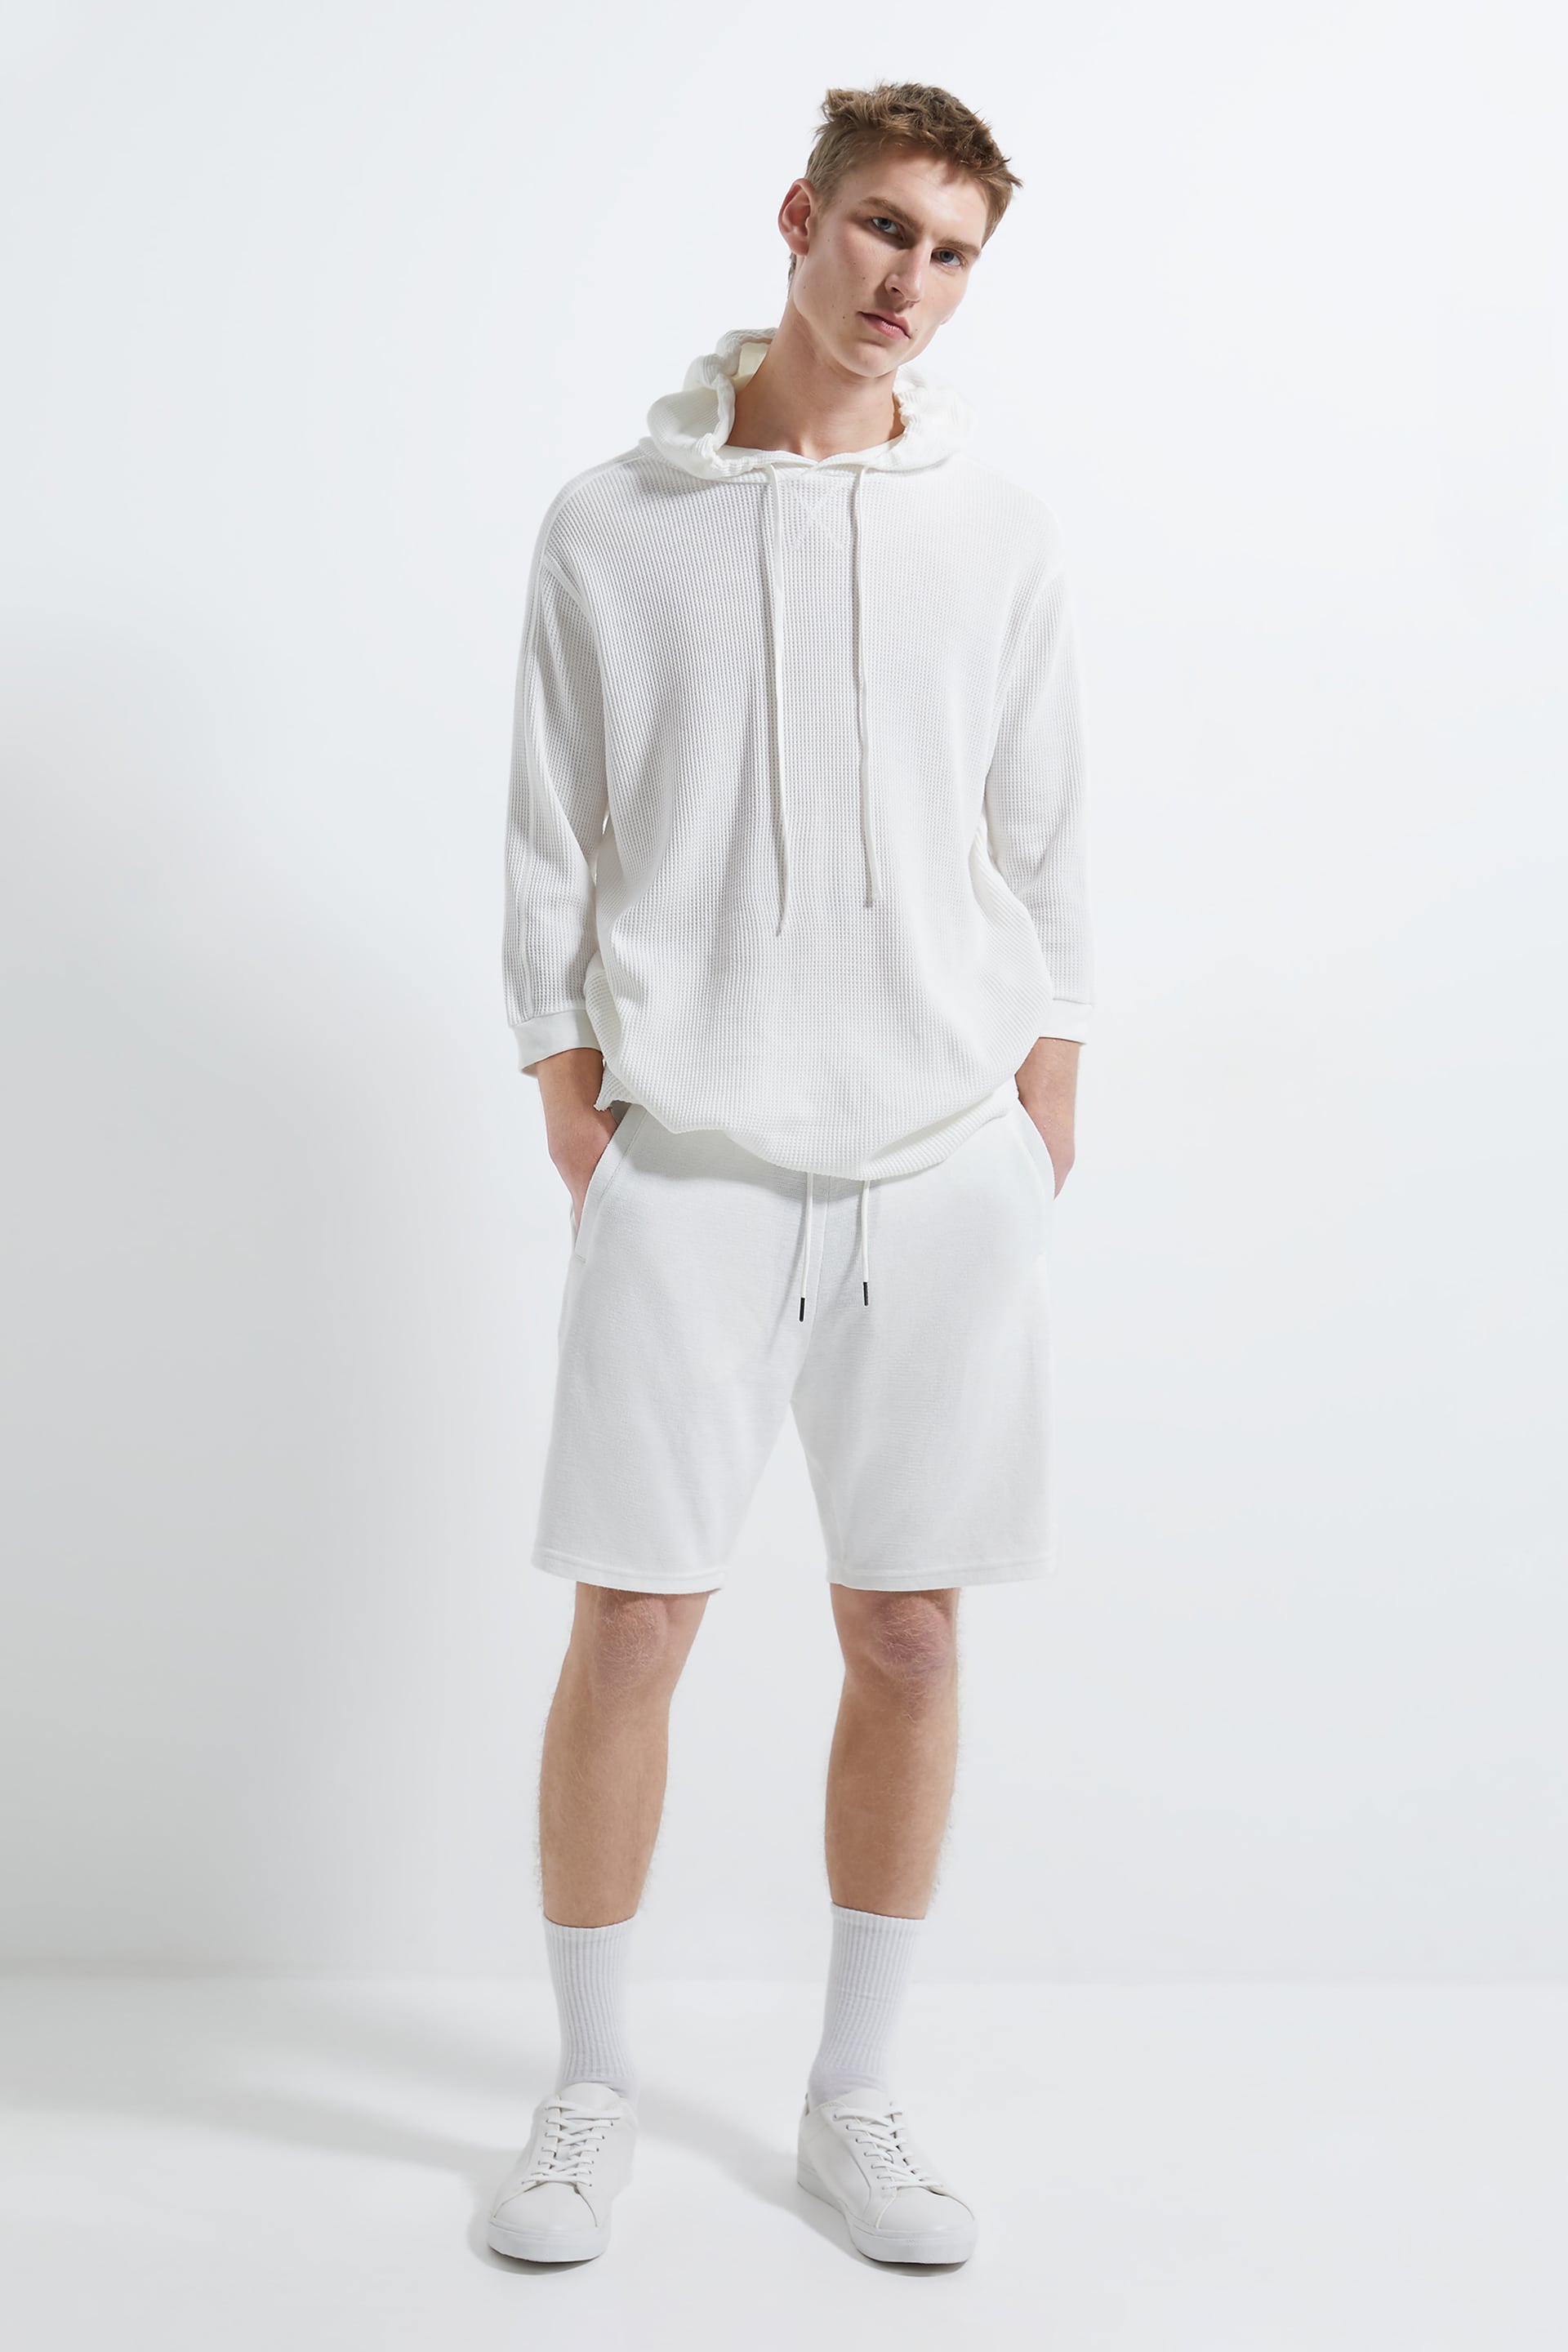 men's summer shorts from Zara